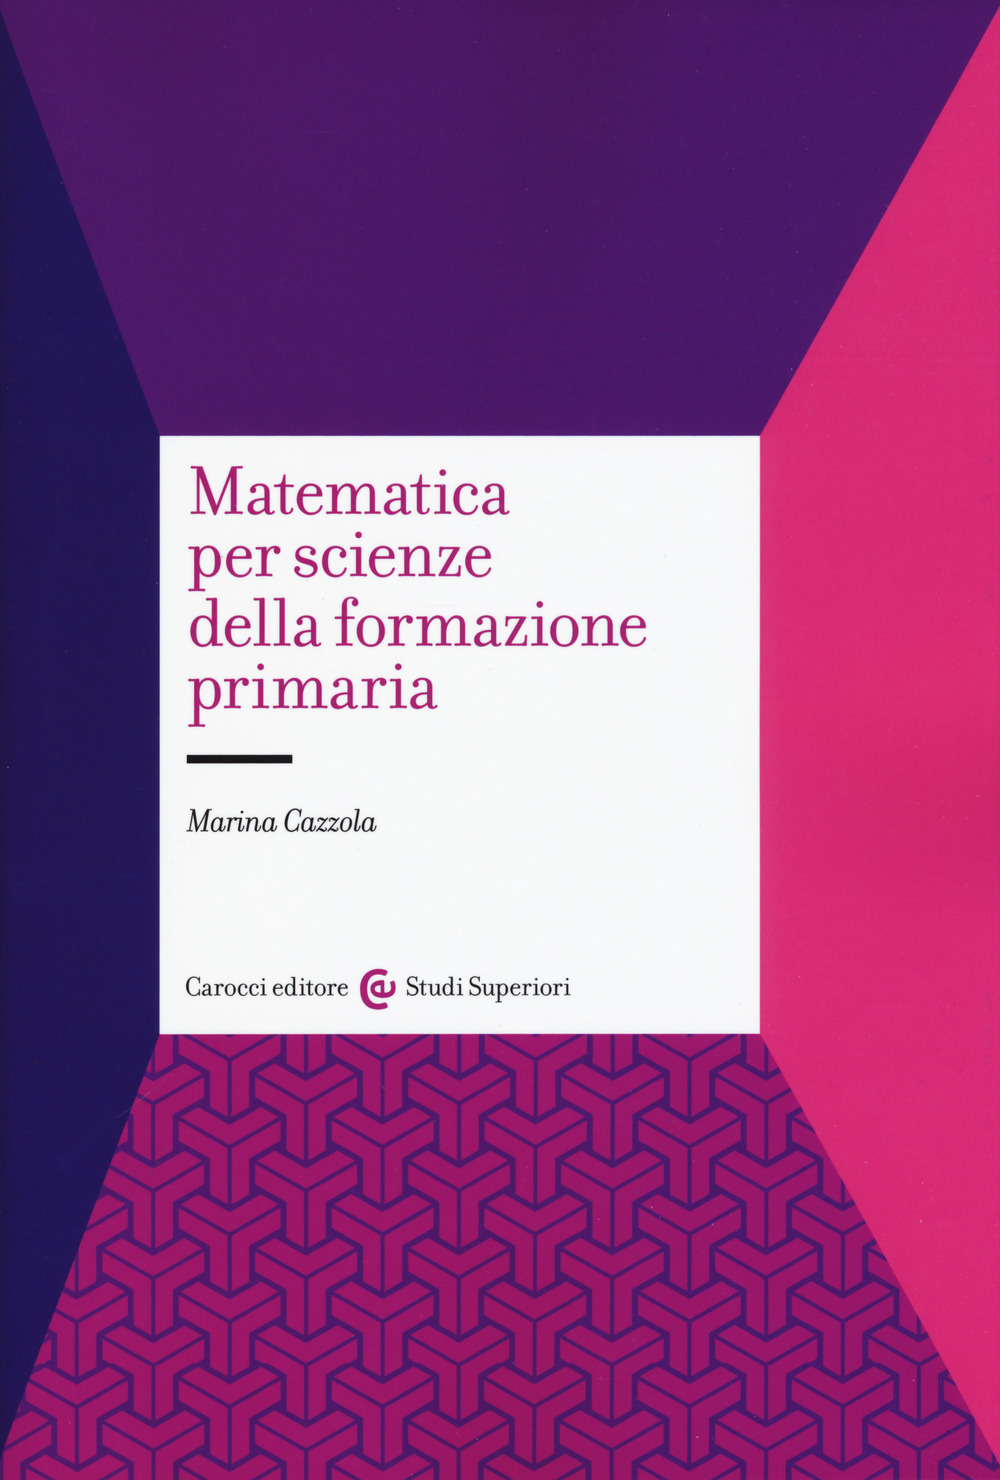 Image of Matematica per scienze della formazione primaria